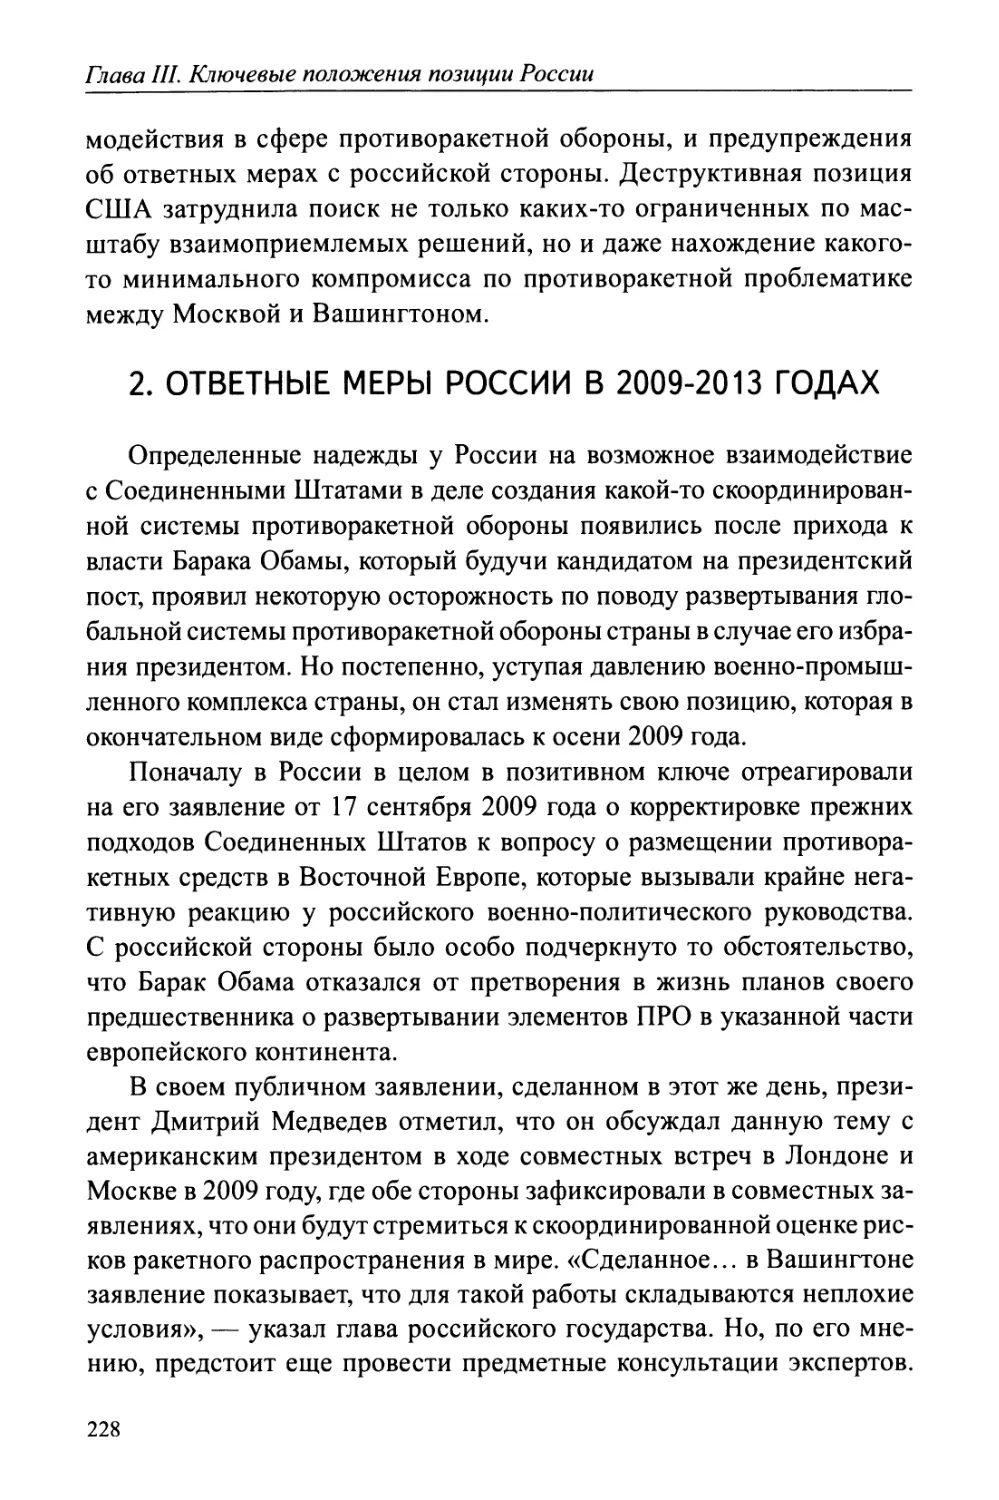 2. Ответные меры России в 2009-2013 годы